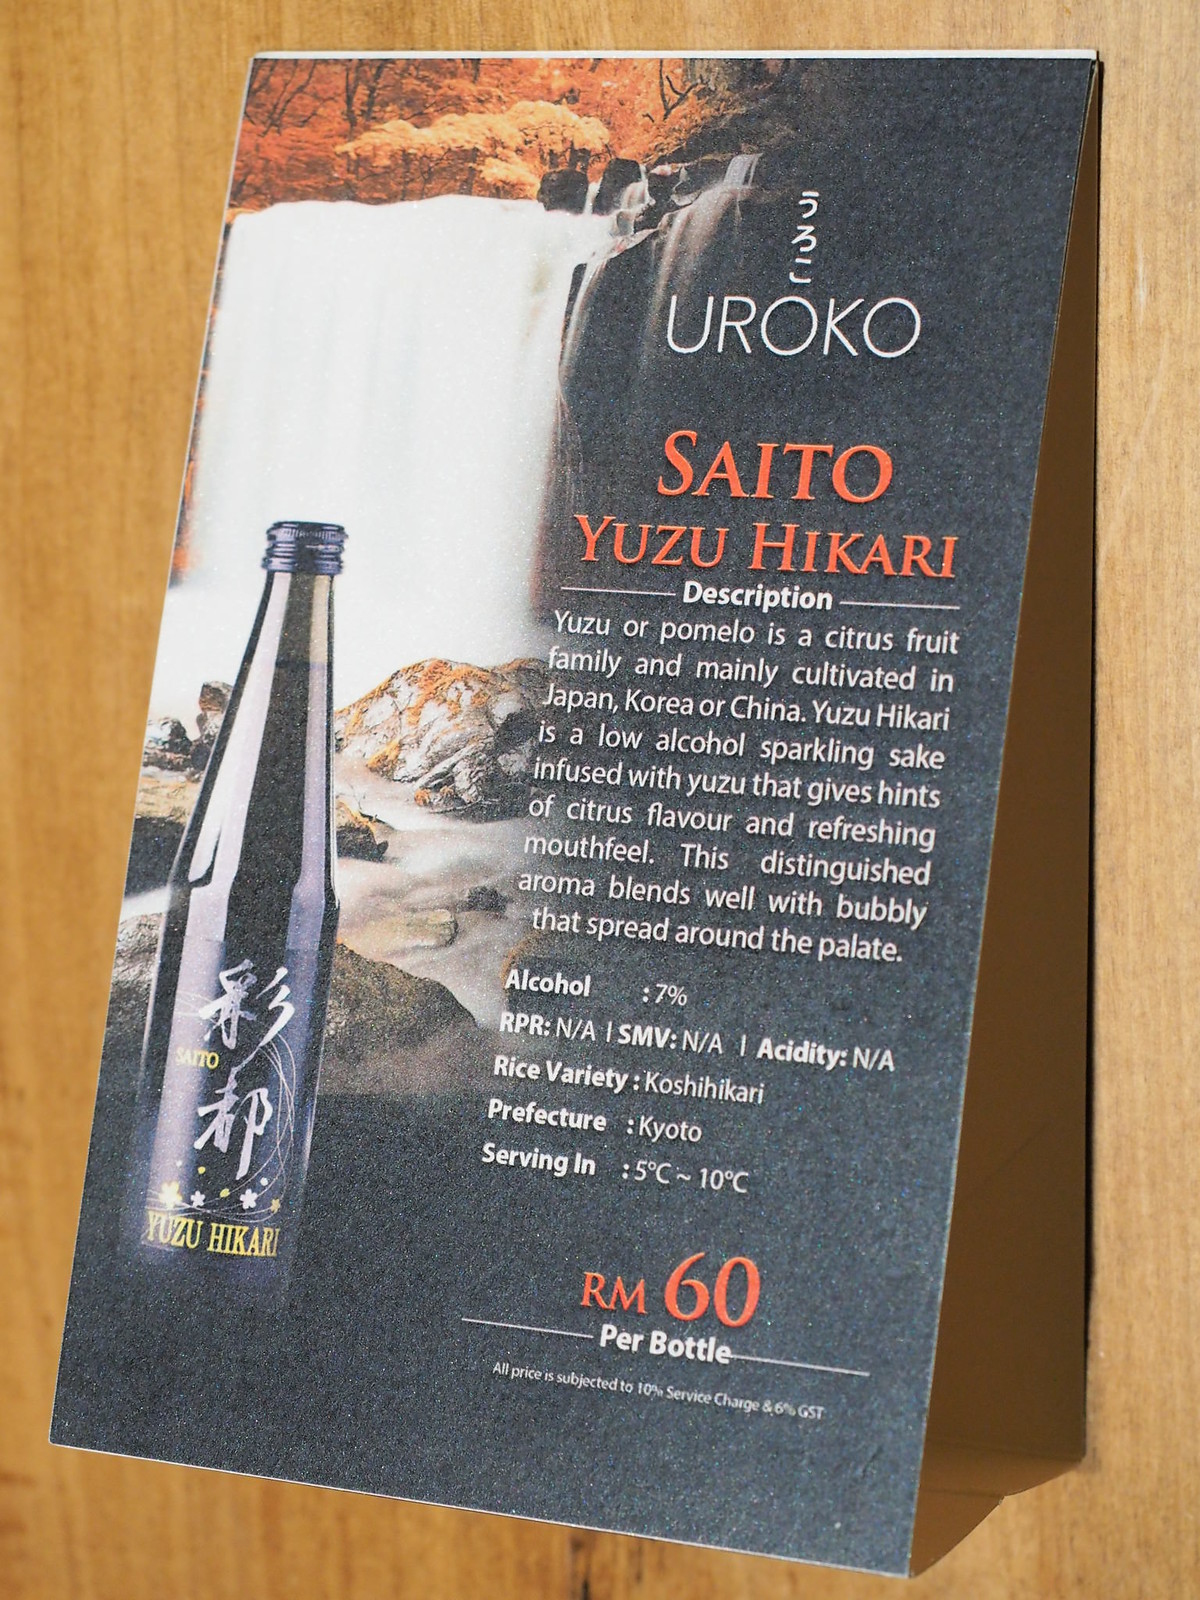 Saito Yuzu Hikari, another type of sake